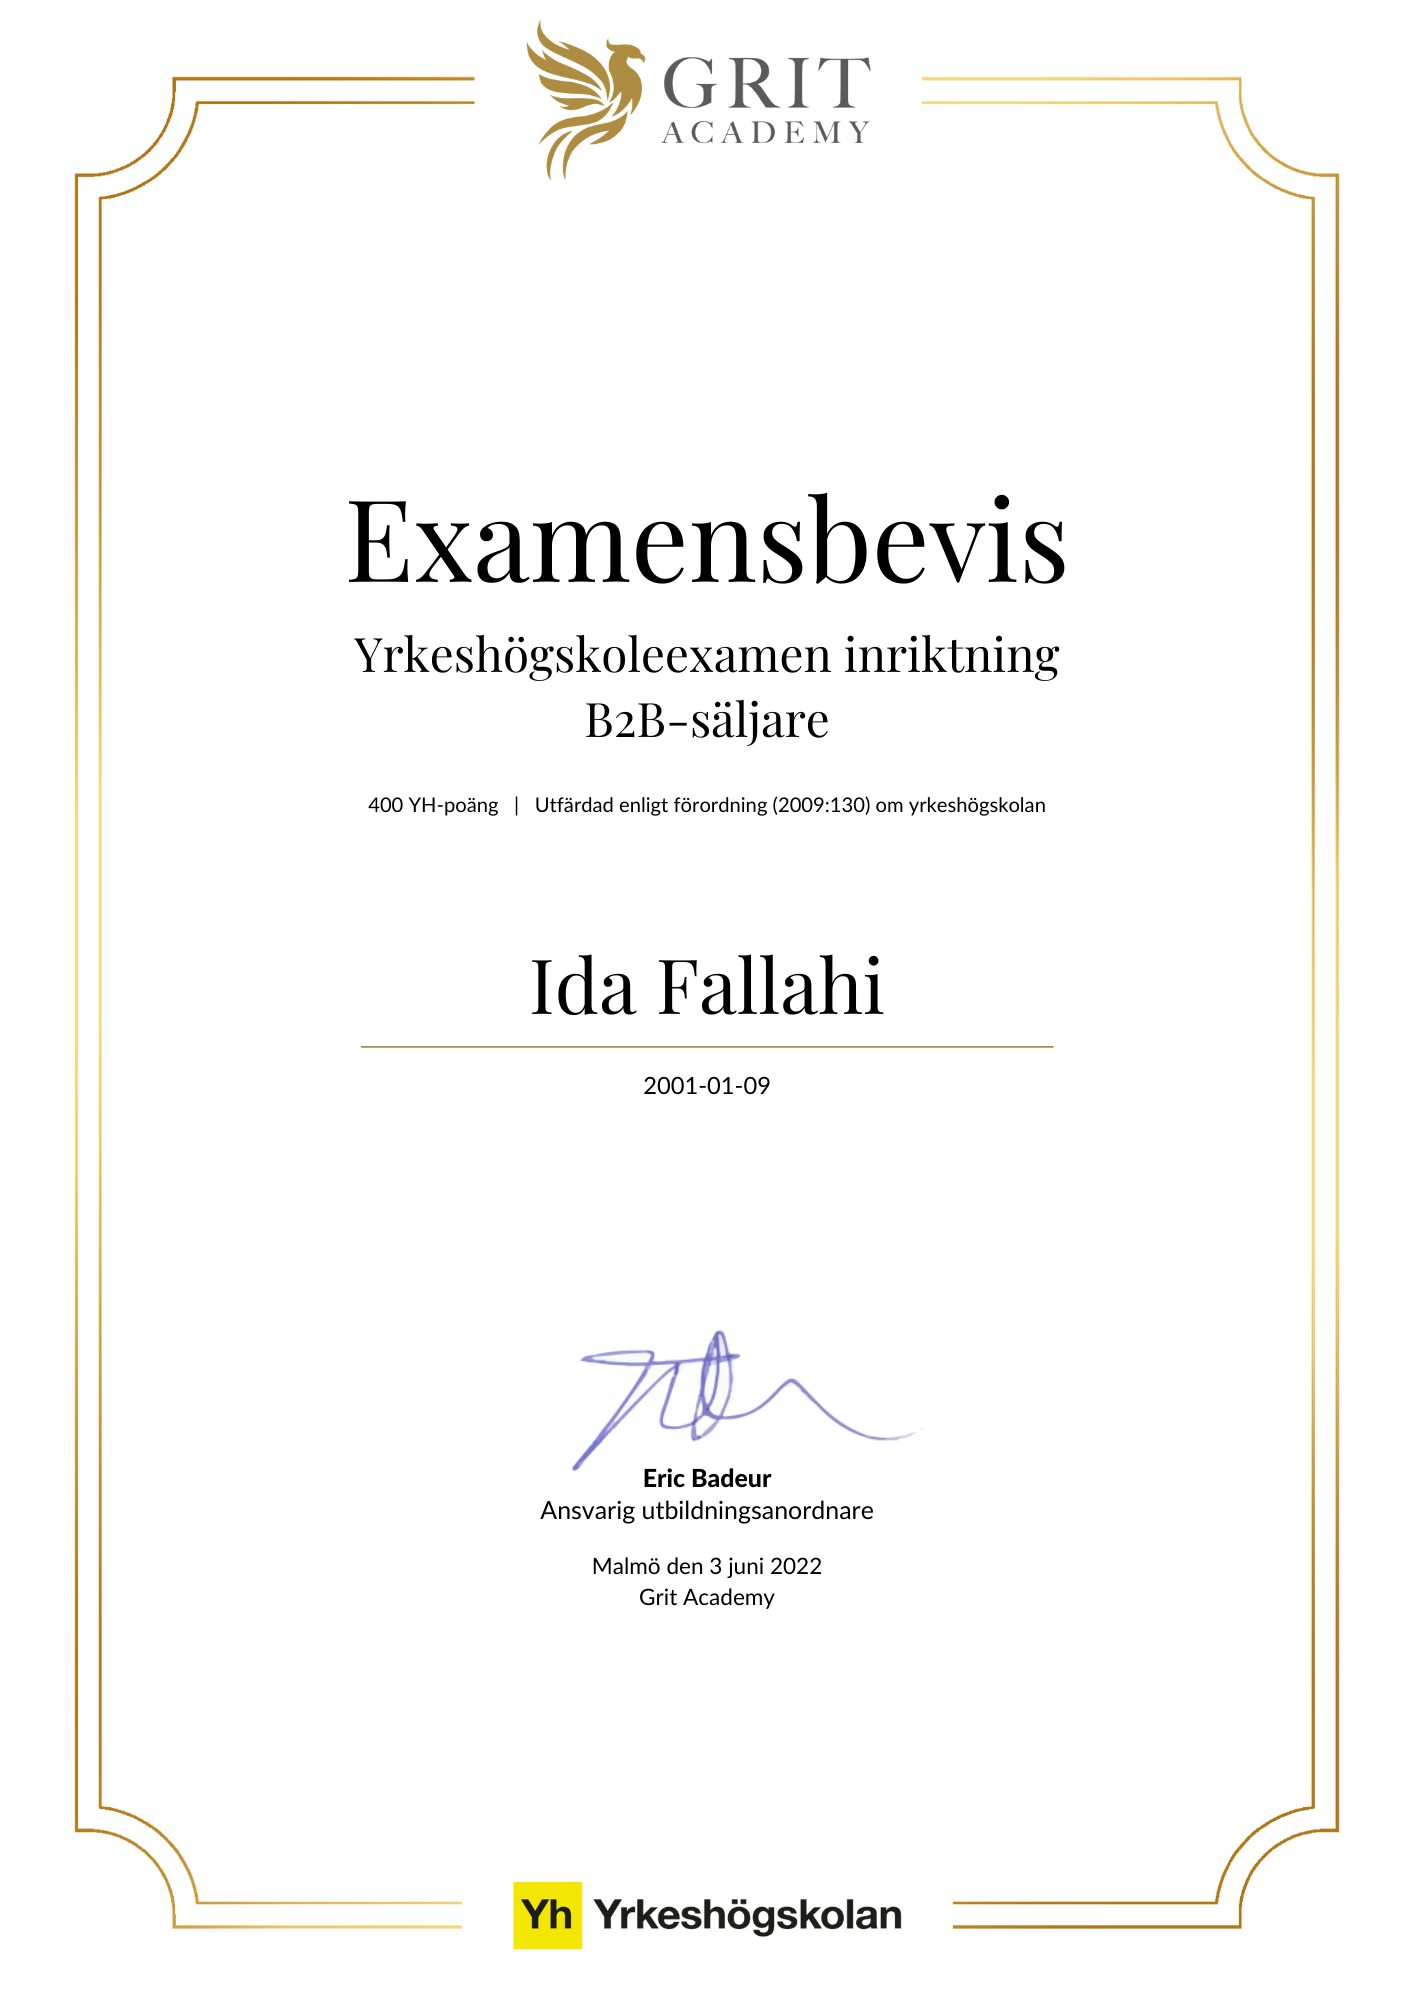 Examensbevis Ida Fallahi